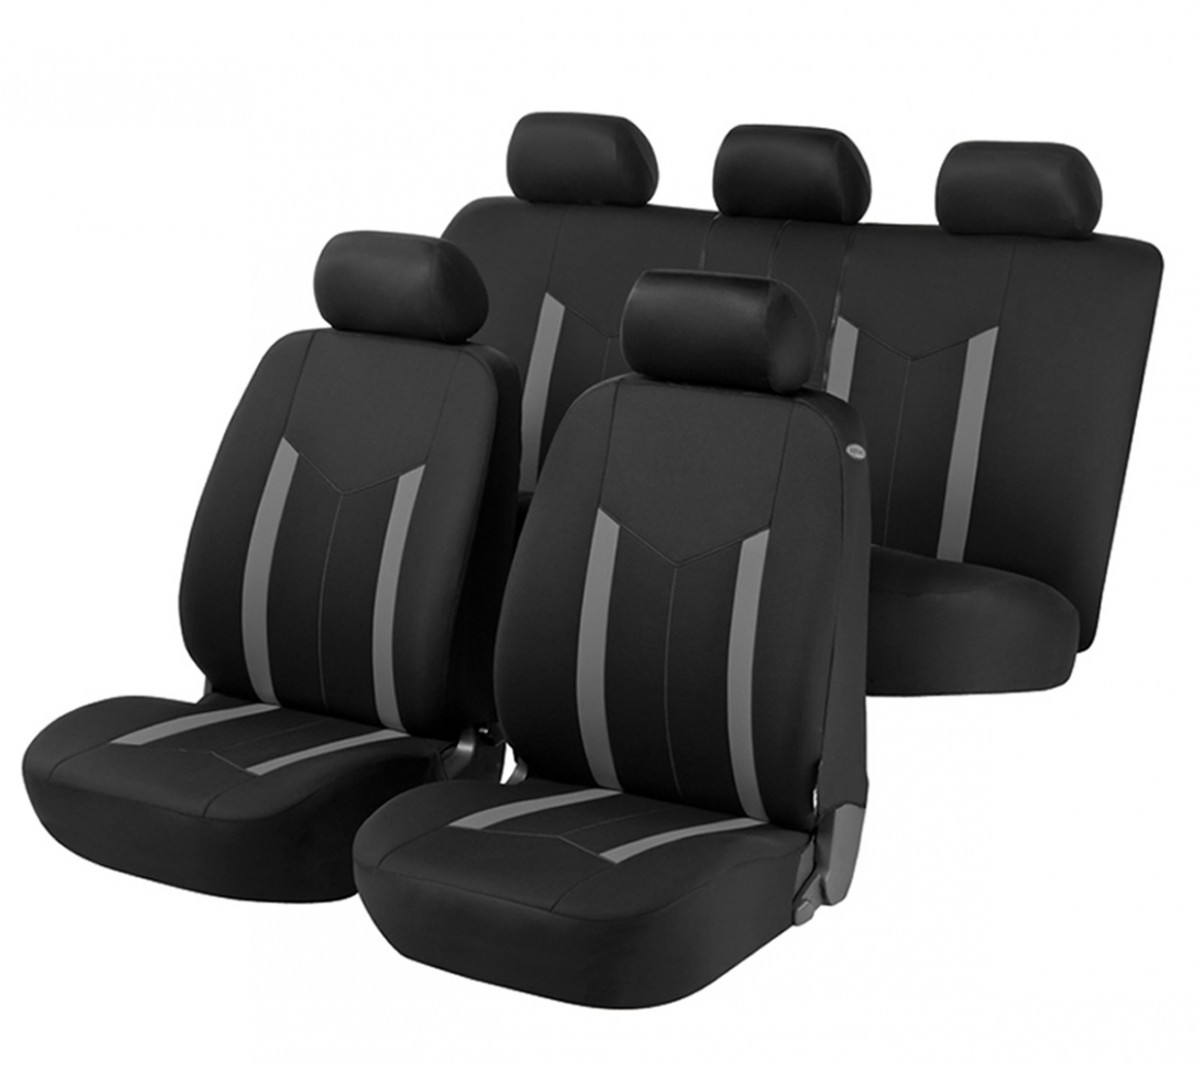 Sitzbezüge k-maniac kompatibel mit VW Golf IV Universal schwarz-beige  Autositzbezüge Set Vordersitze Autozubehör Innenraum Auto Zubehör V2513368